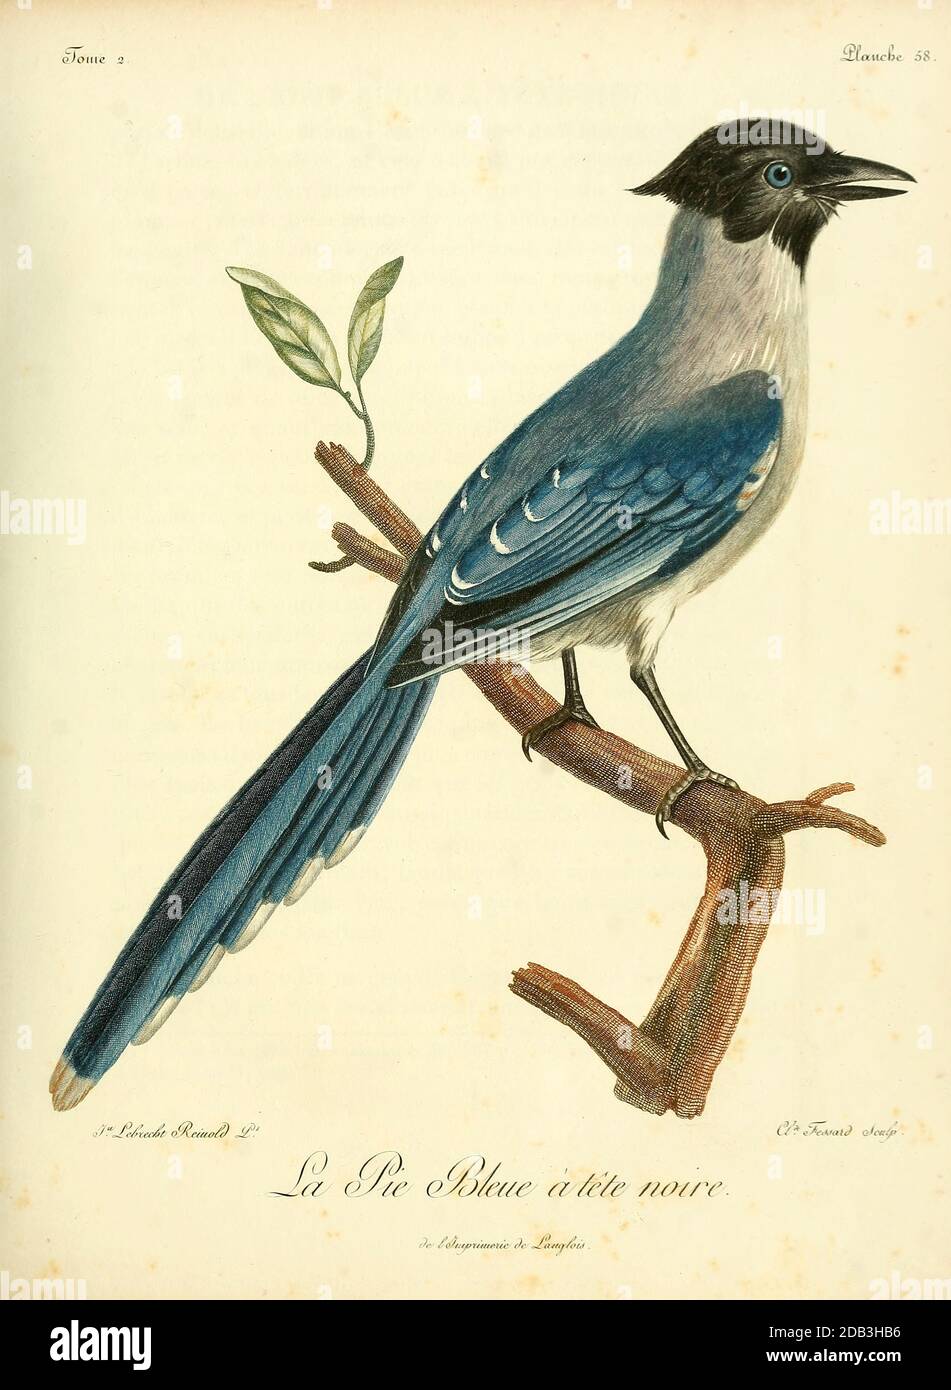 Pie ibérique - die Iberische Elster (Cyanopica cochi) ist ein Vogel in der Krähenfamilie. Sie ist 31–35 cm lang und ähnelt in ihrer Gesamtform der Eurasischen Elster (Pica pica), ist aber schlanker mit proportional kleineren Beinen und Schnabel. Es gehört zur Gattung Cyanopica. Aus dem Buch Histoire naturelle des oiseaux d'Afrique [Naturgeschichte der Vögel Afrikas] Band 2, von Le Vaillant, François, 1753-1824; Publizieren in Paris von Chez J.J. Fuchs, Bibliothekar 1799 Stockfoto